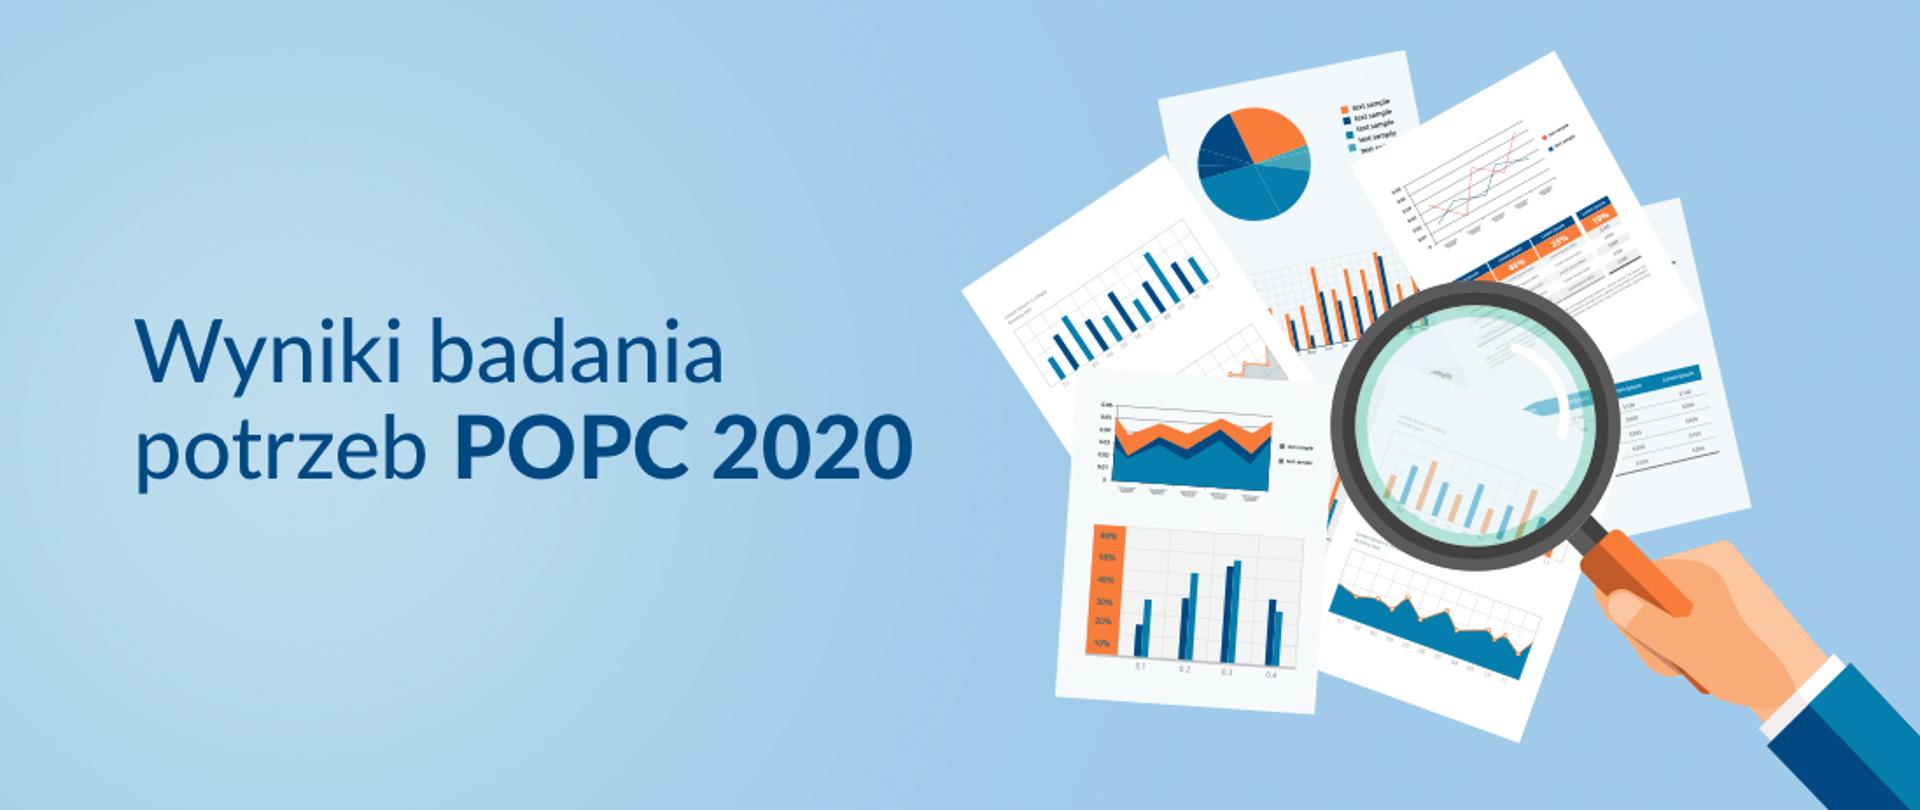 baner o treści "Wyniki badania potrzeb POPC 2020" przedstawiający lupę przykładaną do dokumentów z wykresami.